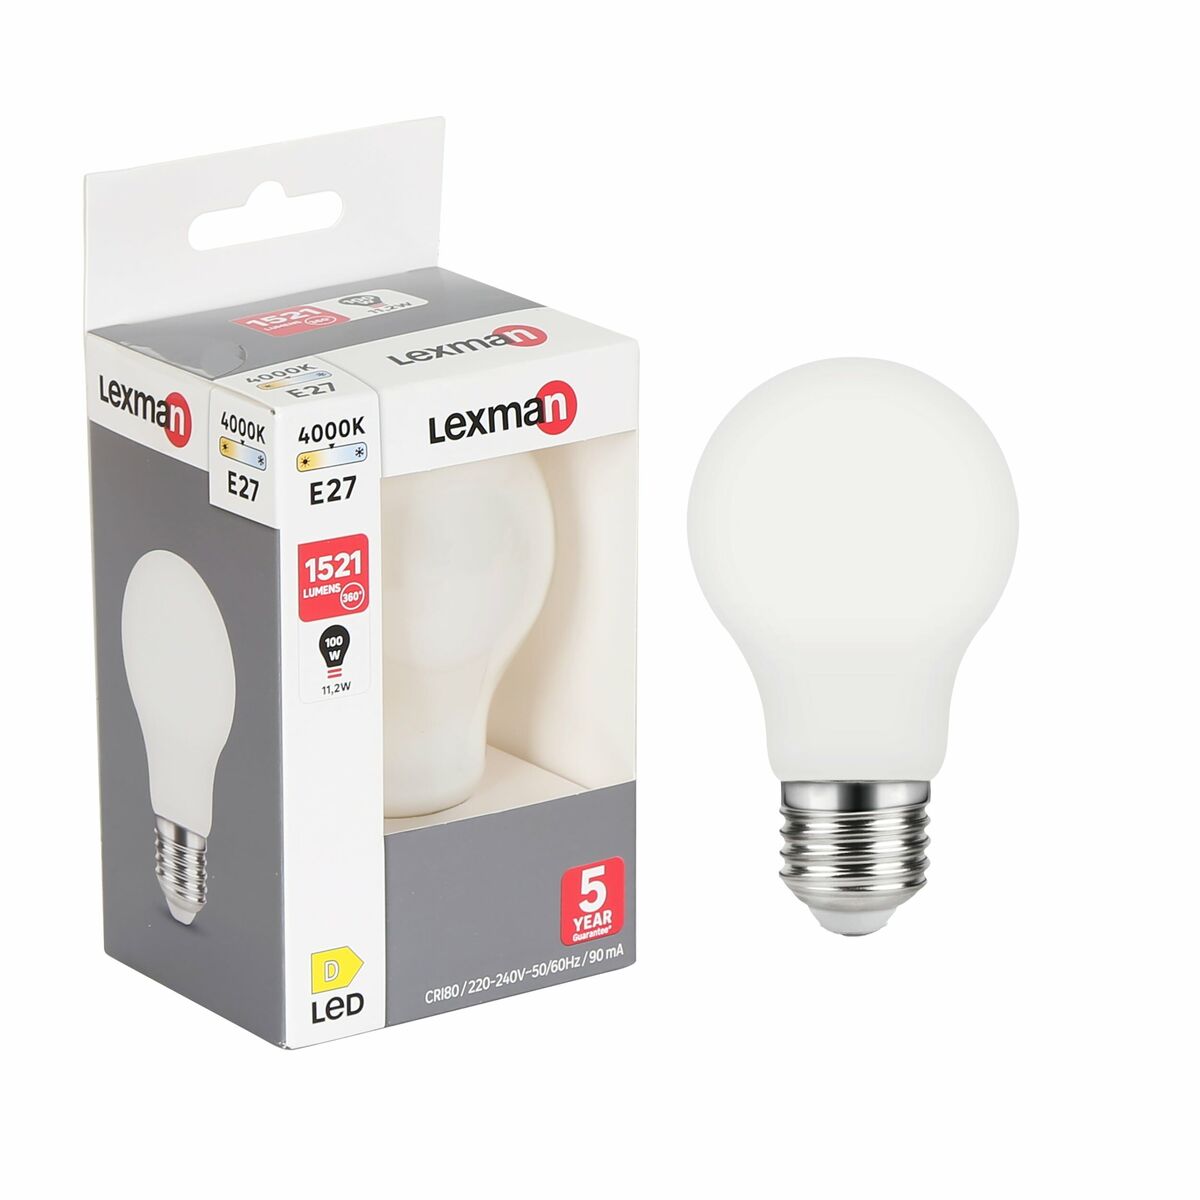 Żarówka LED E27 11,2 W = 100 W 1521 lm neutralna biel Lexman